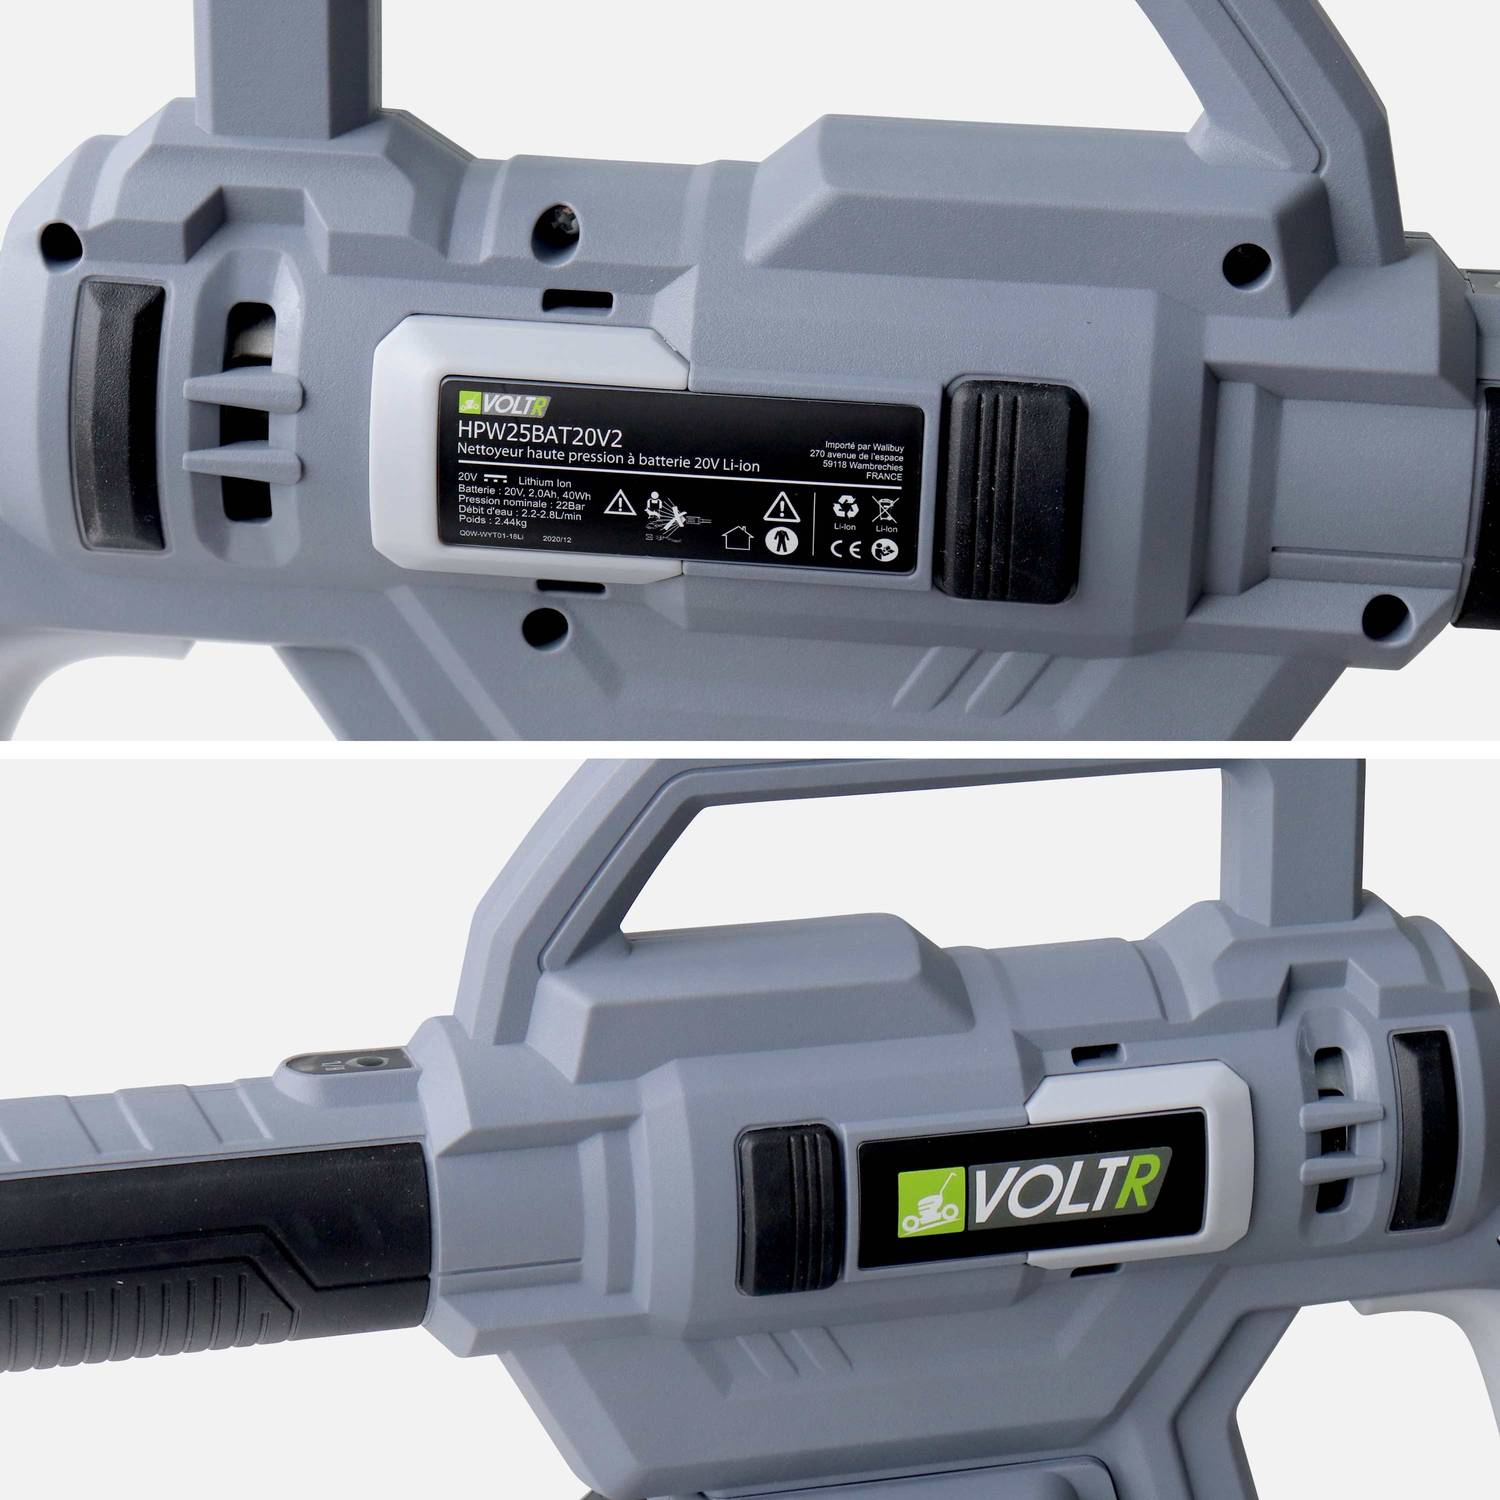 VOLTR - Pistola de lavado a presión de 25 bar con batería de 20V - juego completo de accesorios que incluye cepillo, boquilla de pulverización variable, depósito de detergente, batería y cargador    Photo6